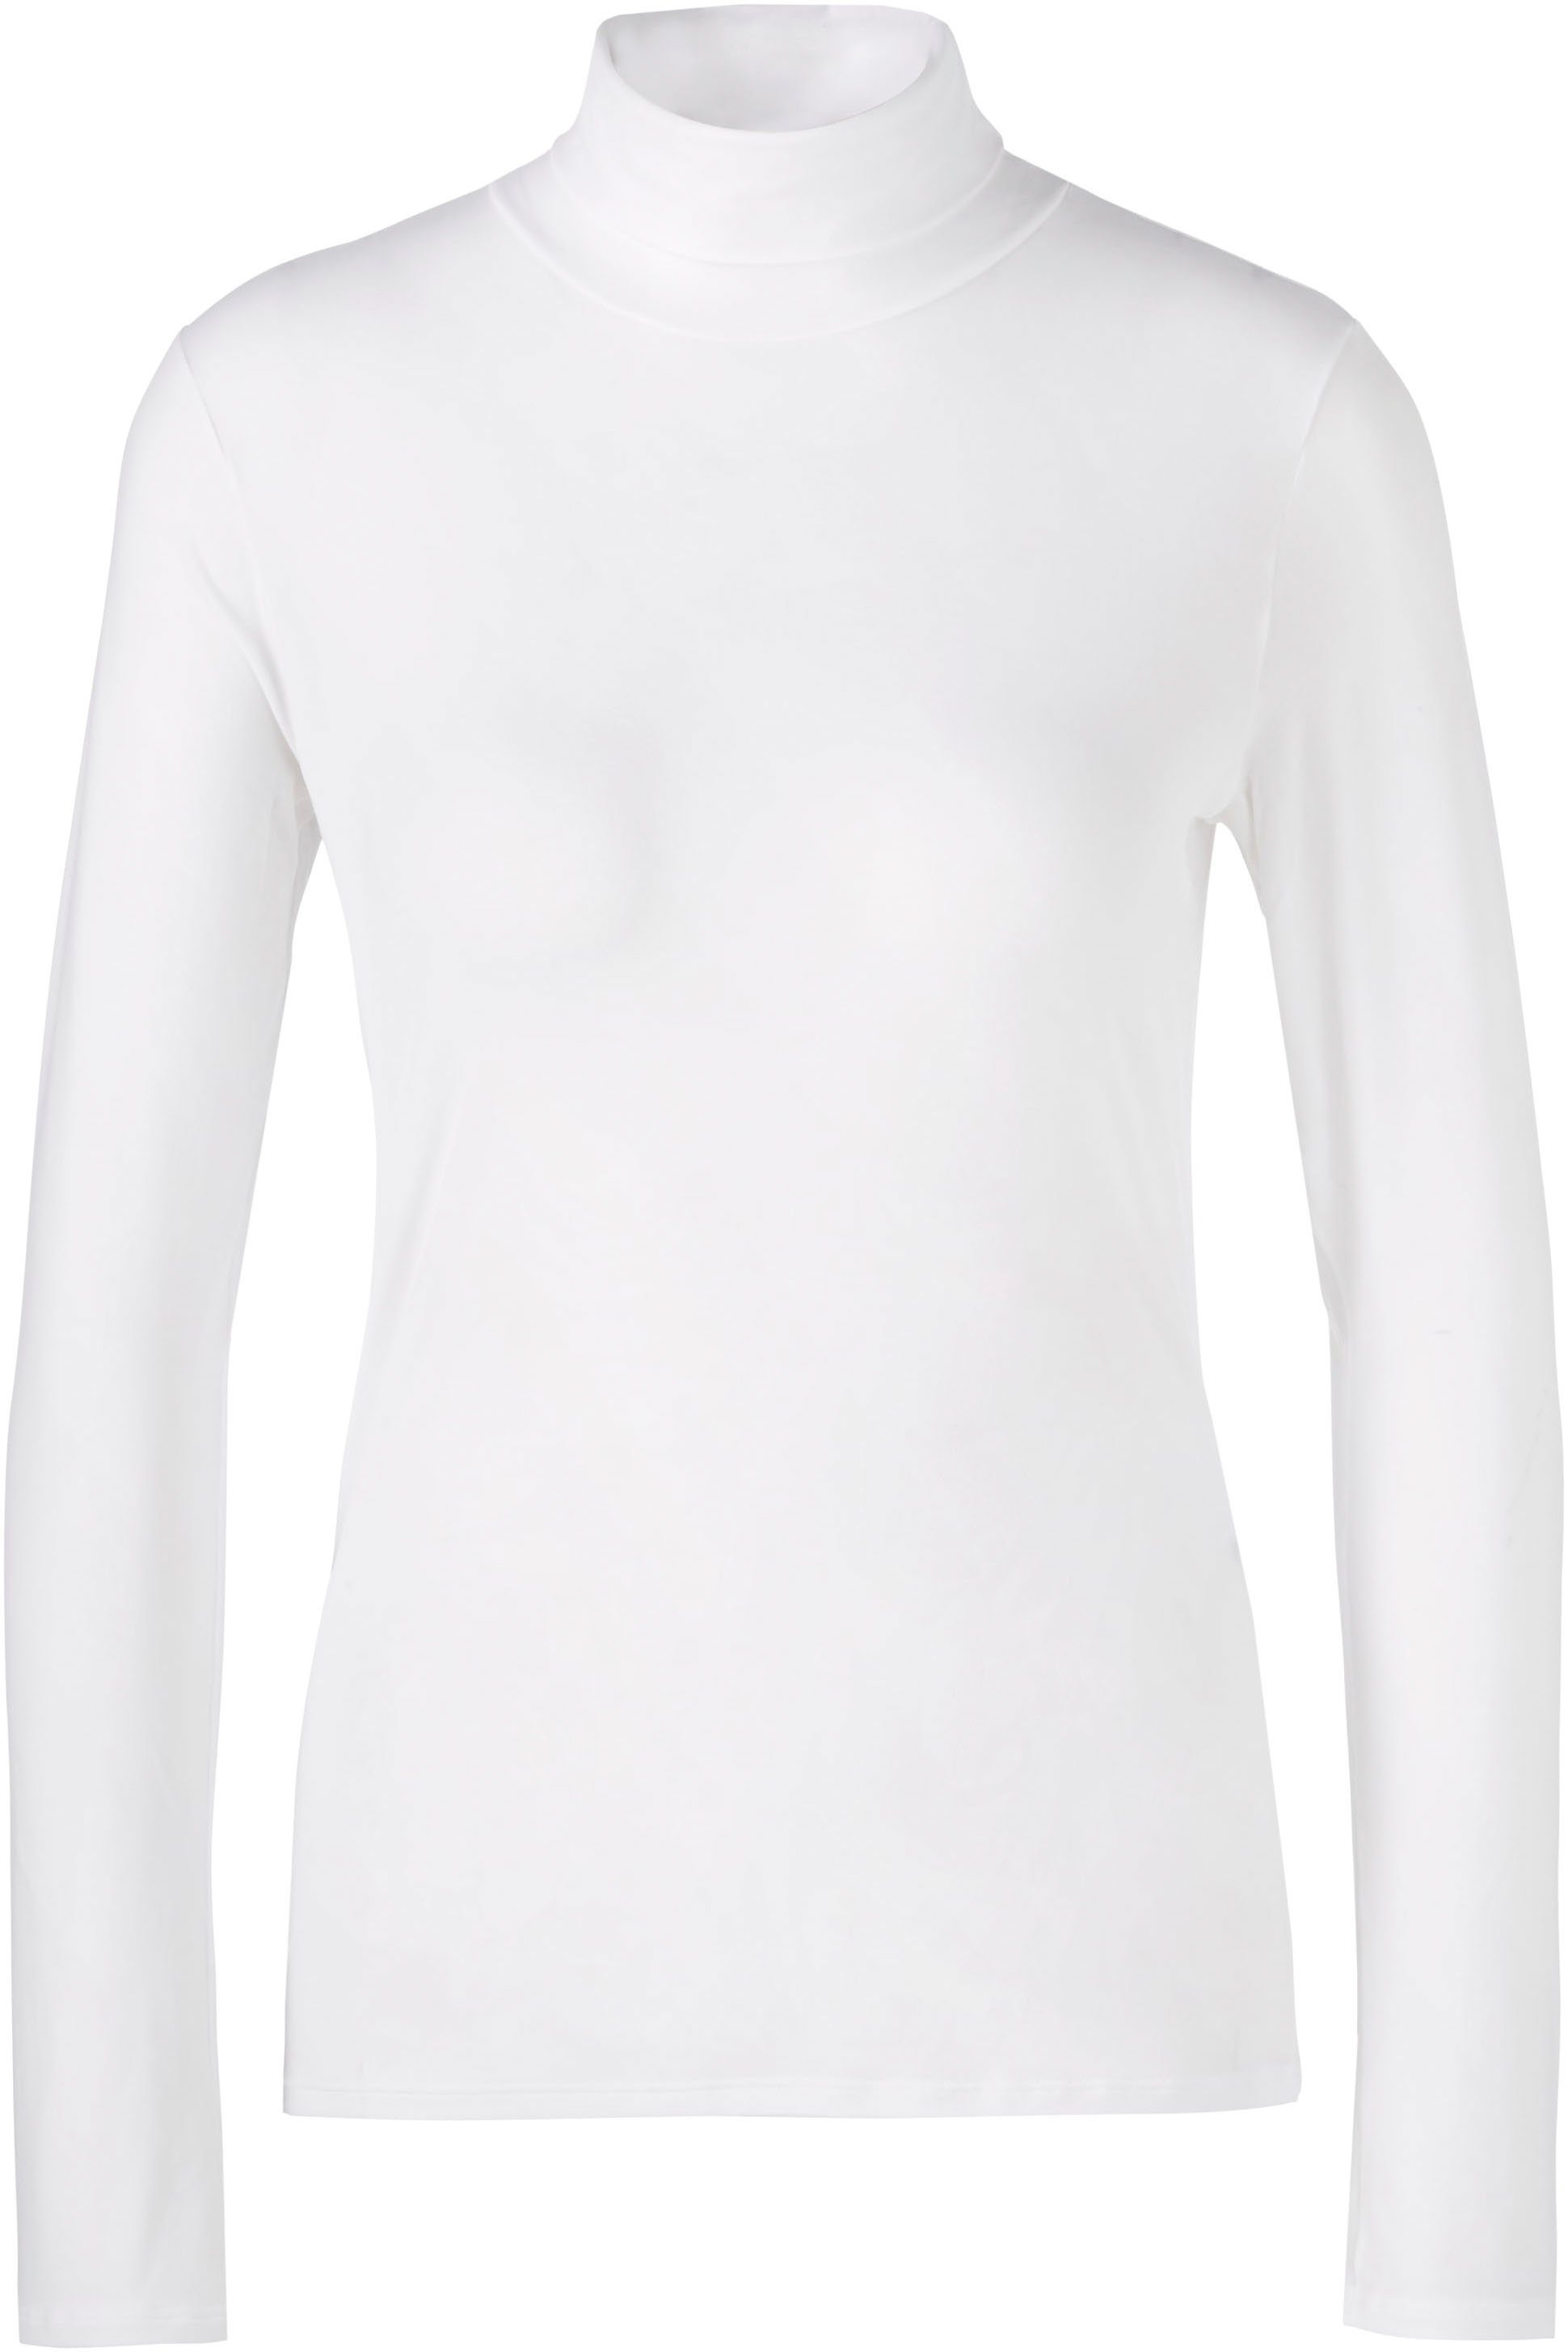 Premium Rollkragenshirt Damenmode elastisch Essential" white "Collection Cain Zarter Marc Rollkragenpullover,